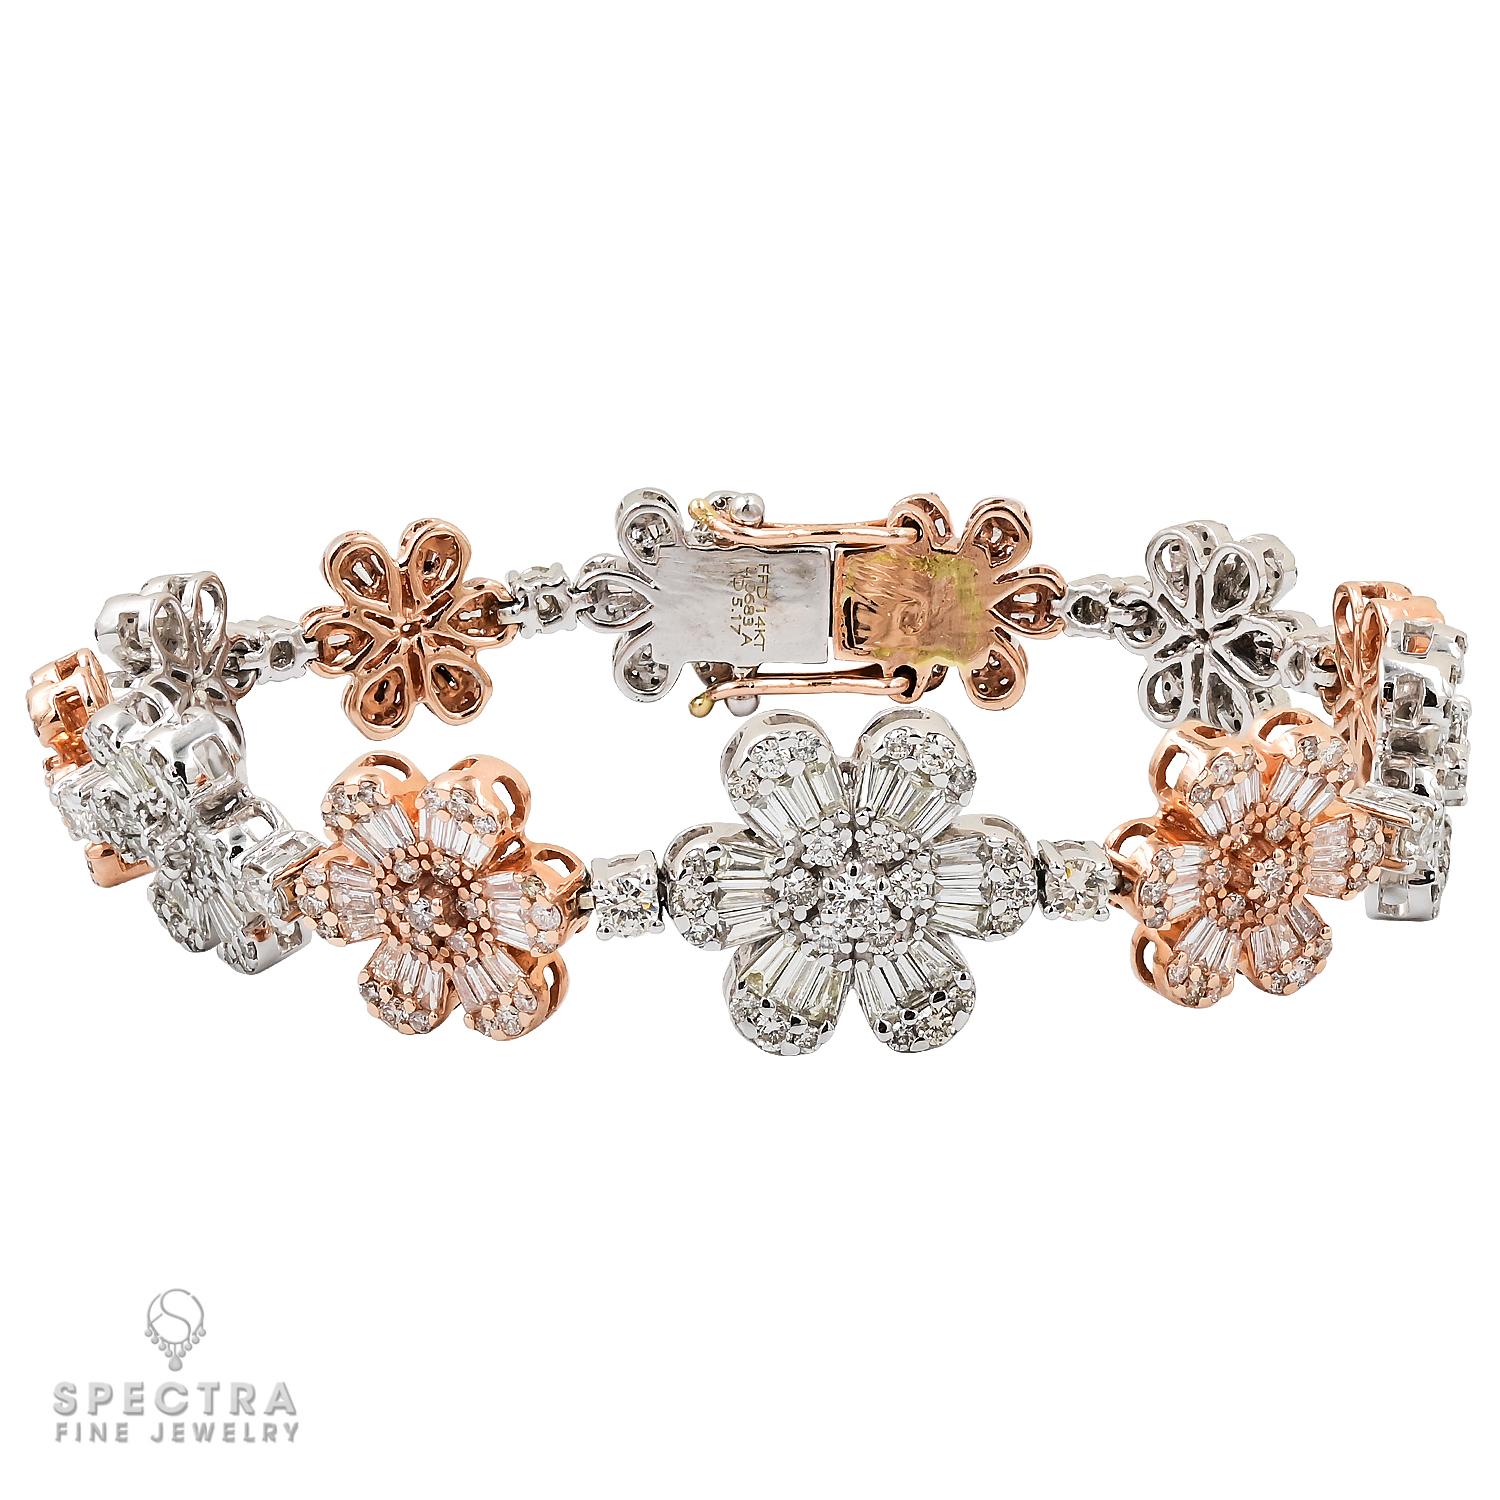 Ein wunderschönes, mit Diamanten verziertes Armband aus 14 Karat Weiß- und Roségold.
Das Design besteht aus 12 Blumen, die mit runden und Baguette-Diamanten besetzt sind.
Das Gesamtgewicht der Diamanten beträgt 5,17 Karat.
Die Diamanten entsprechen